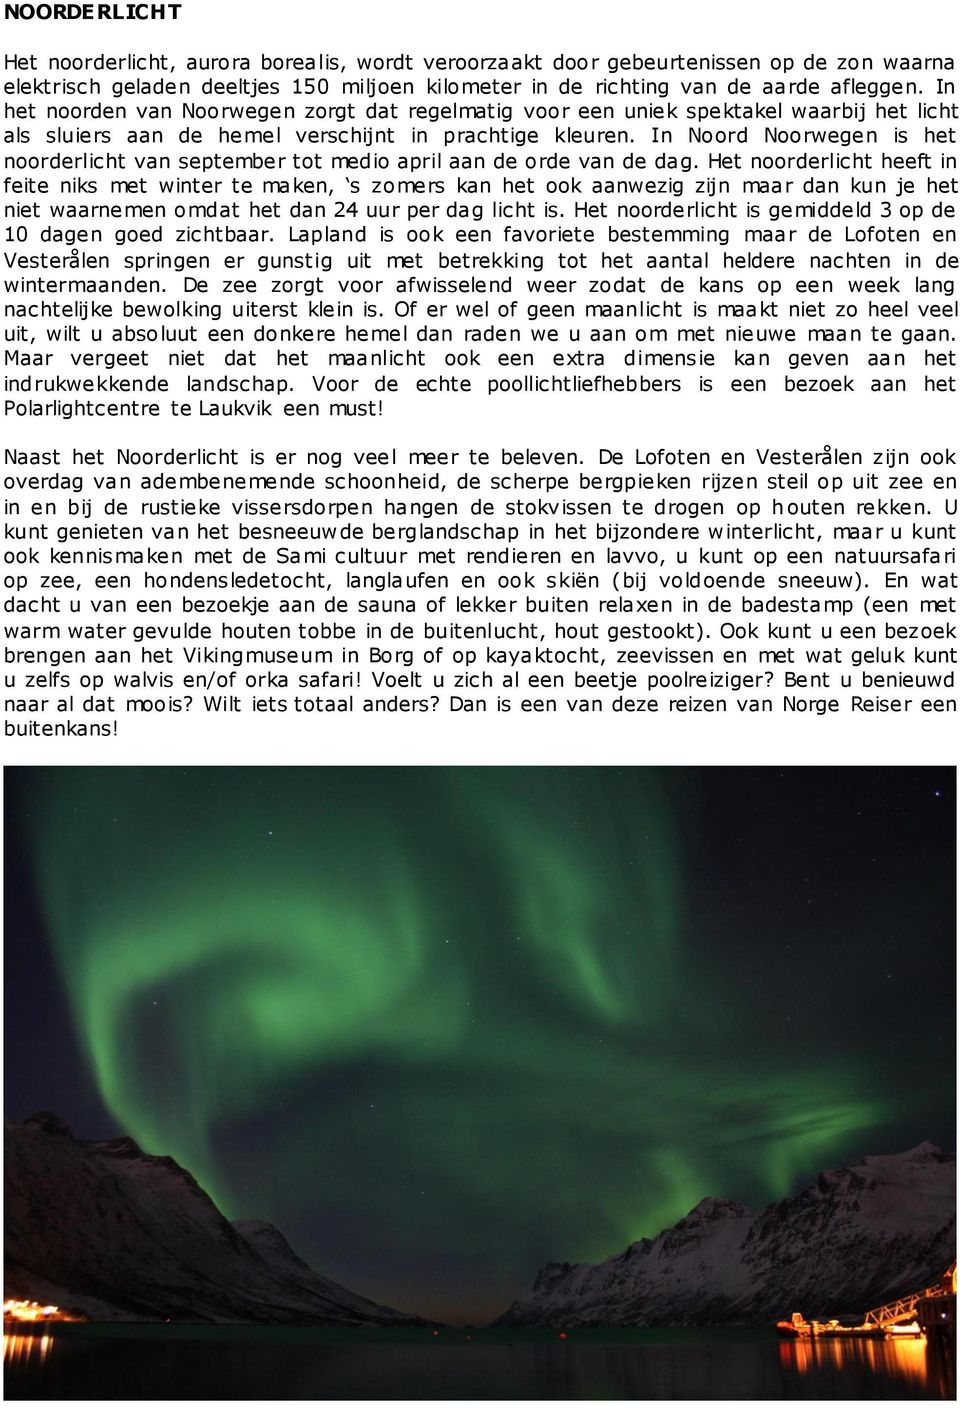 In Noord Noorwegen is het noorderlicht van september tot medio april aan de orde van de dag.